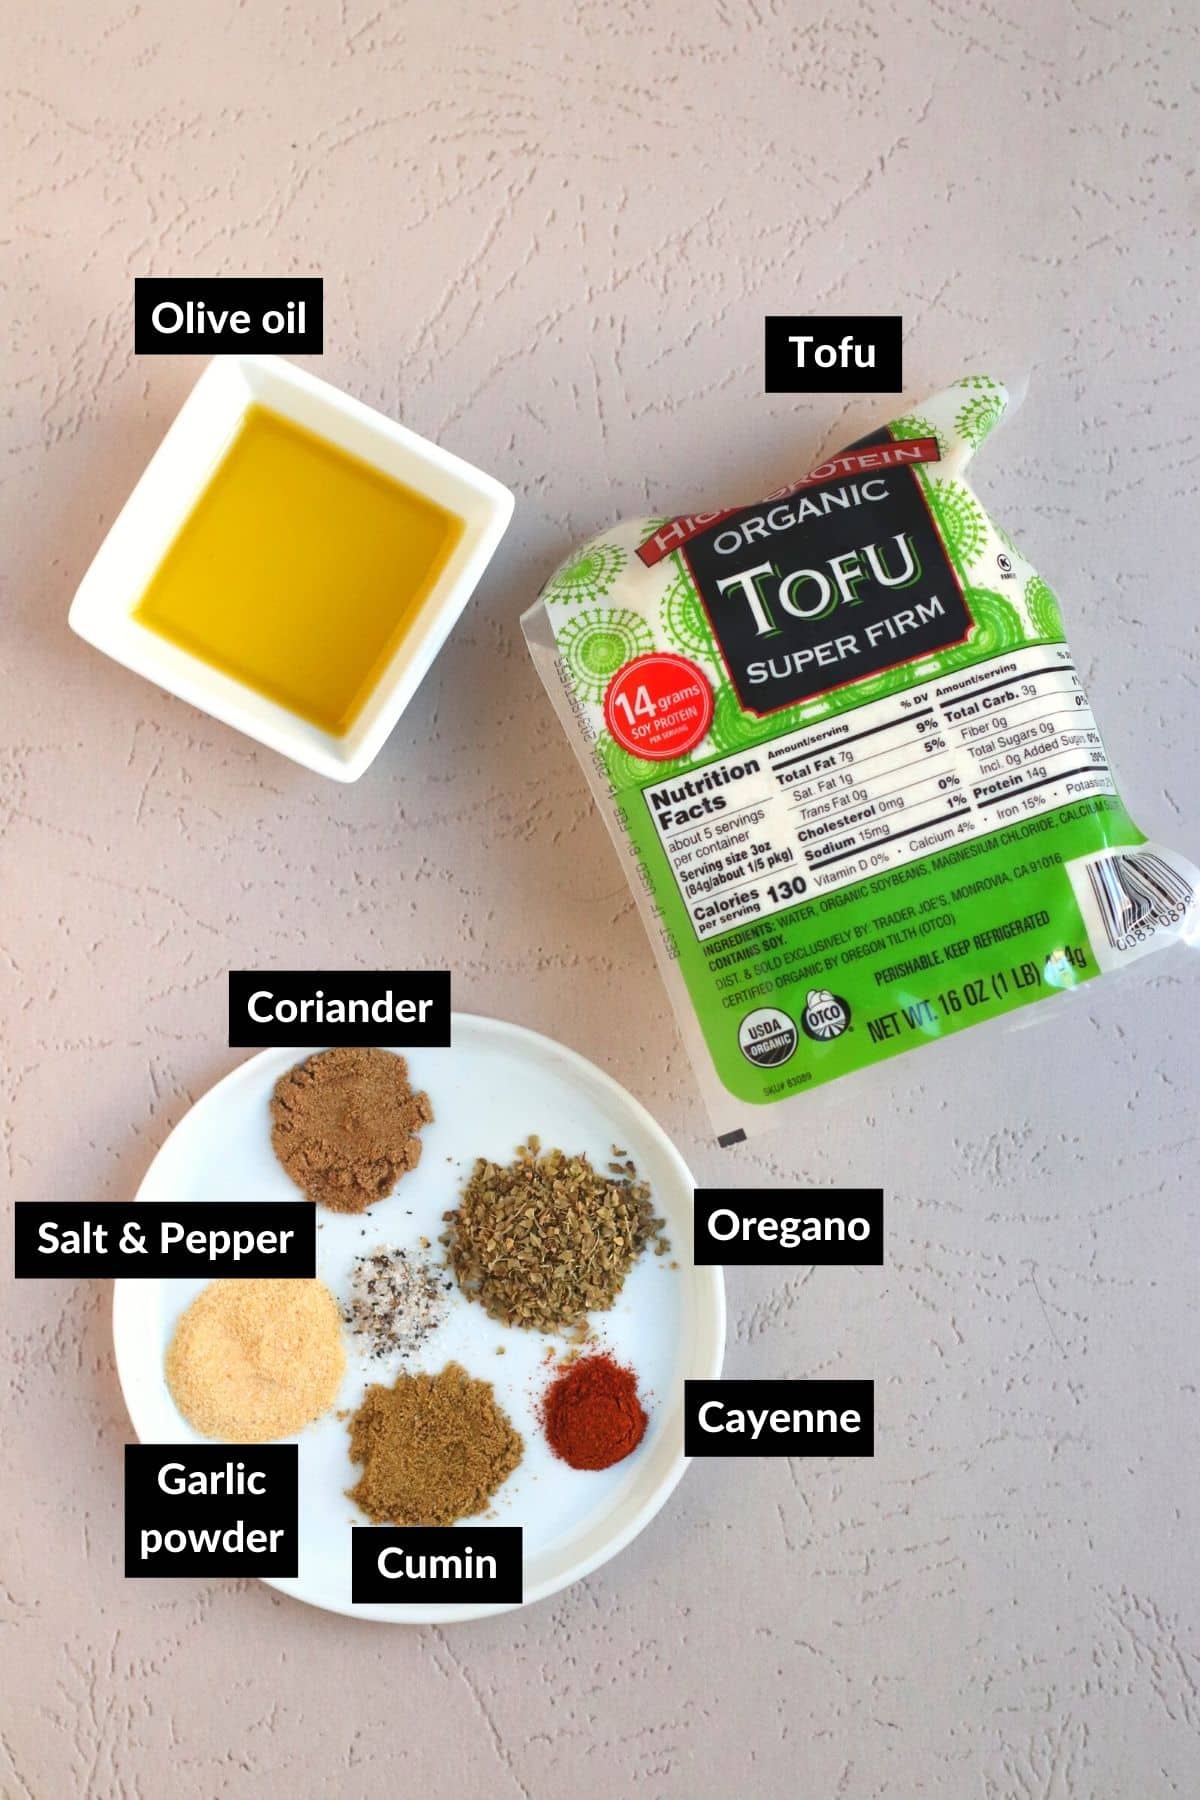 Ingredientes para hacer el relleno de tofu